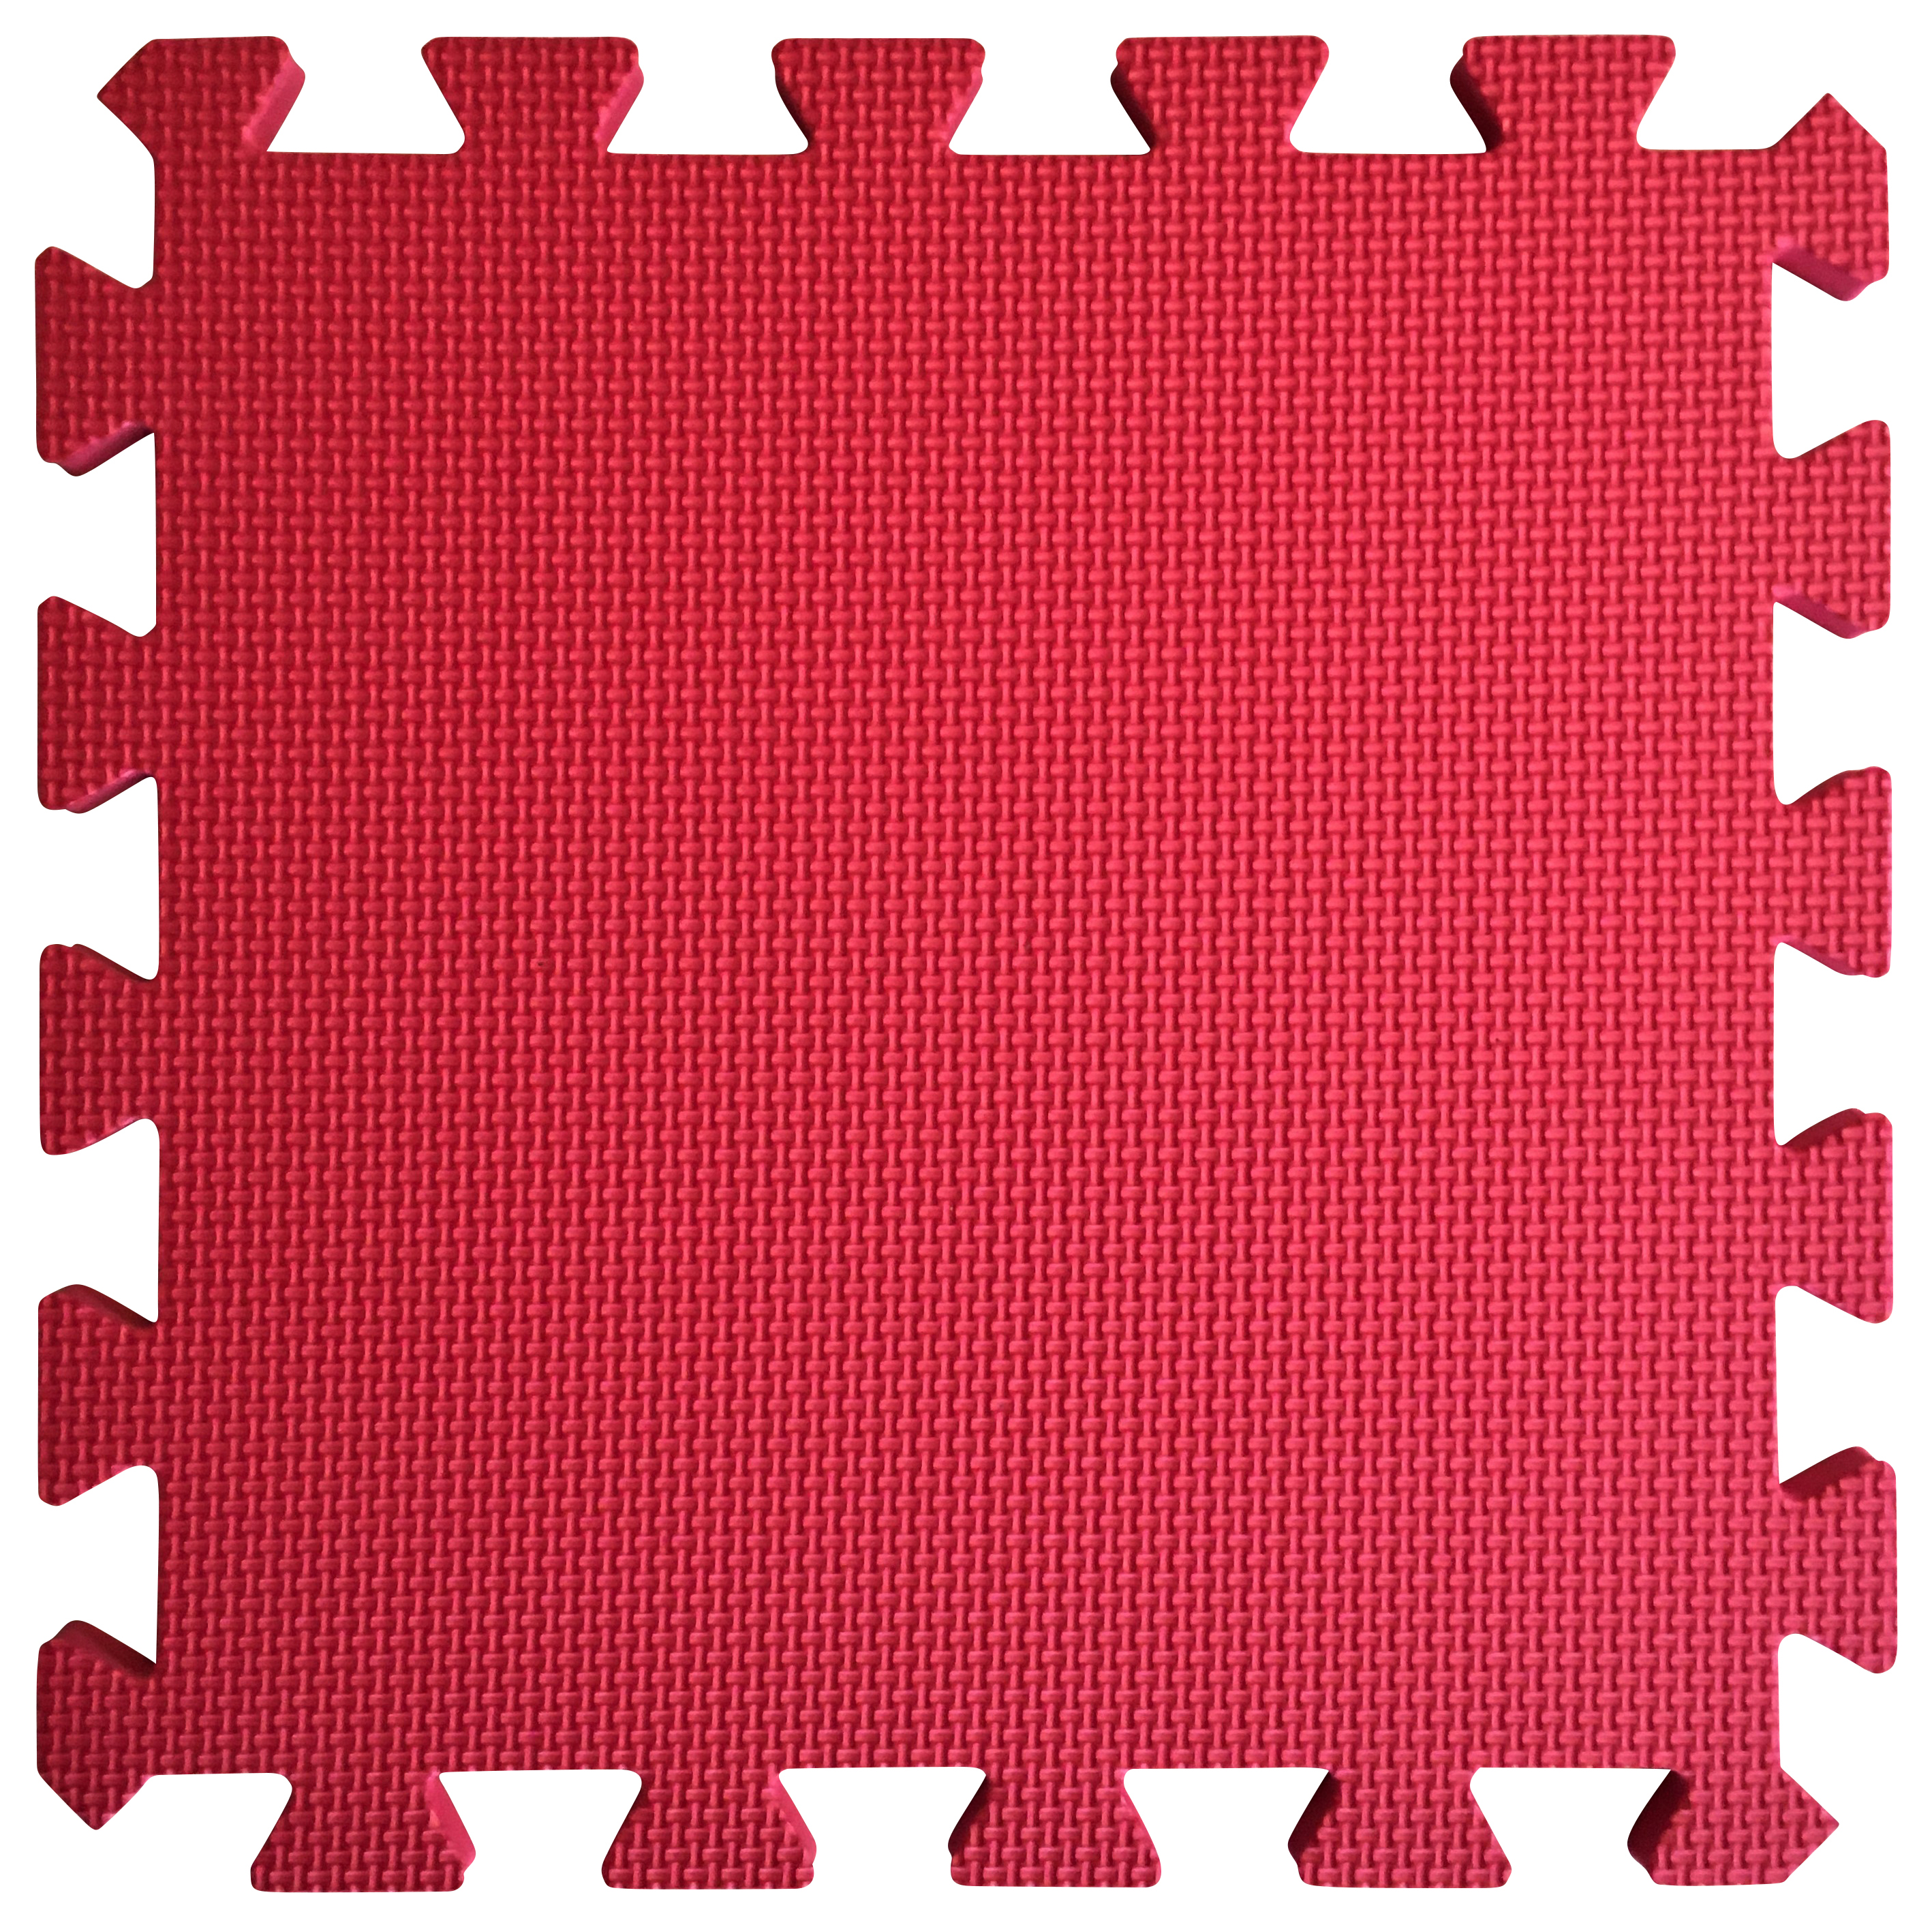 Image of Warm Floor Red Interlocking Floor Tiles for Garden Buildings - 8 x 8ft